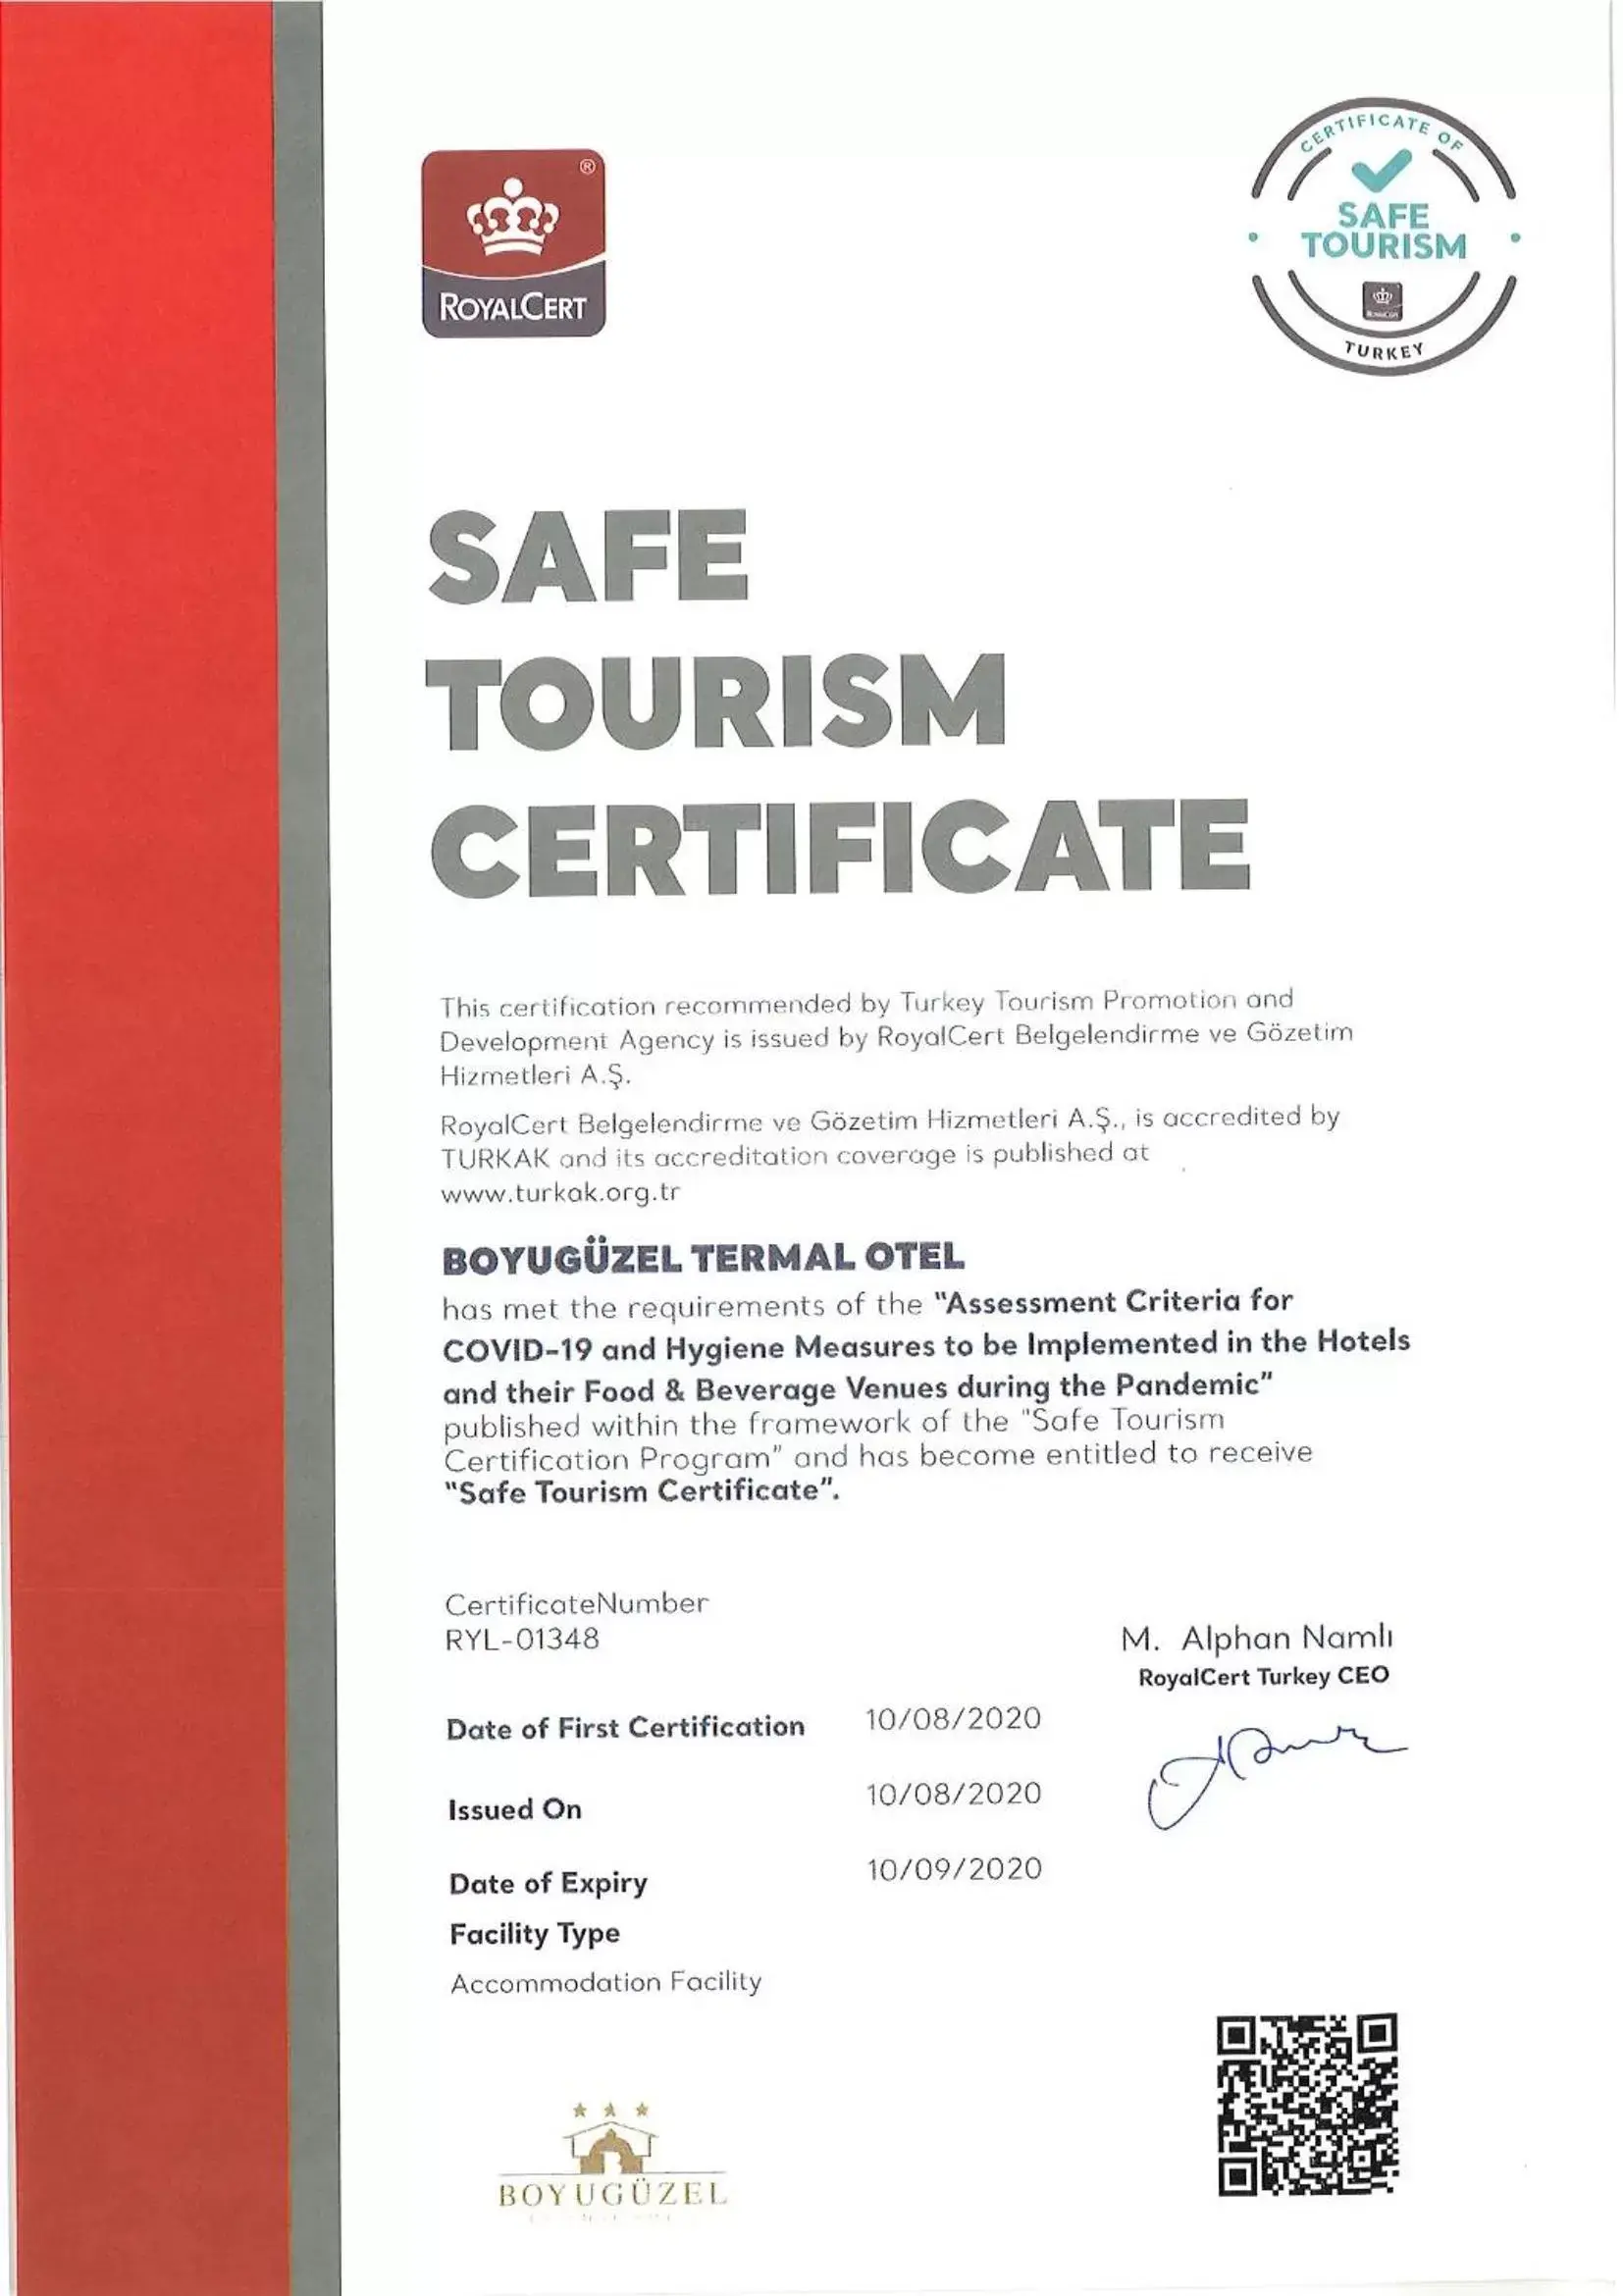 Certificate/Award in Boyuguzel Termal Hotel